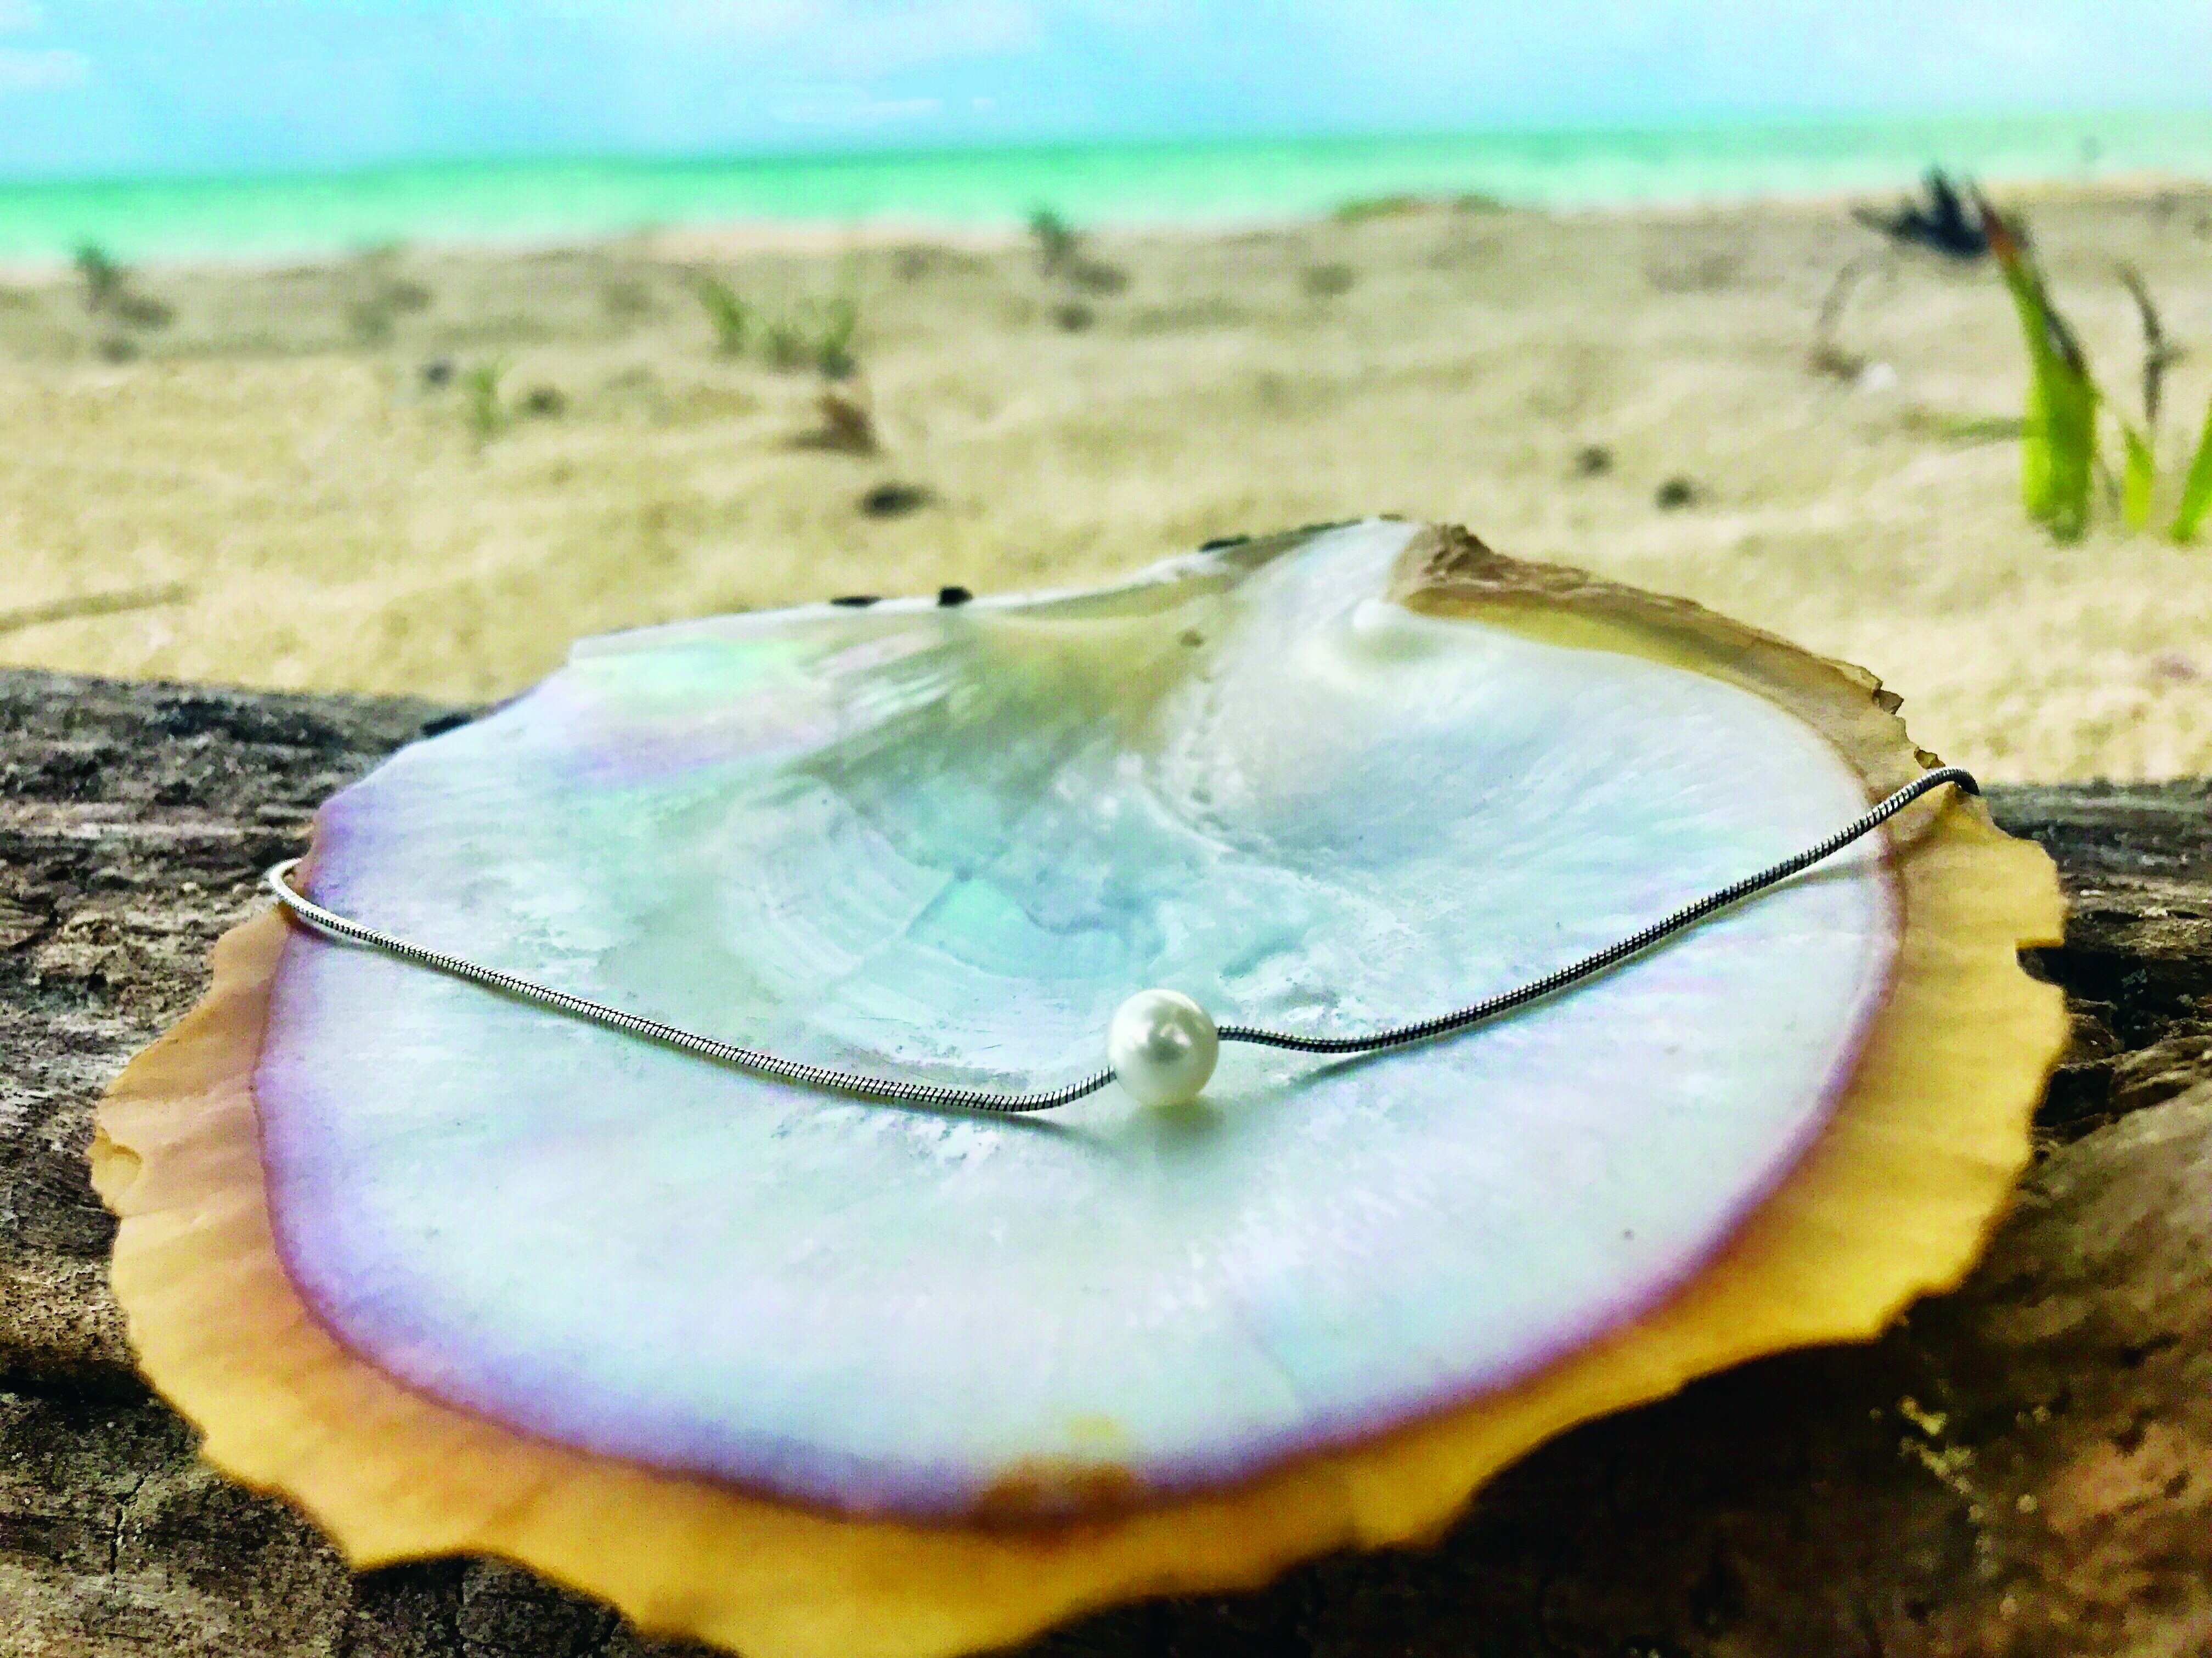 Descubre cómo se forma una perla en esta playa de Cozumel